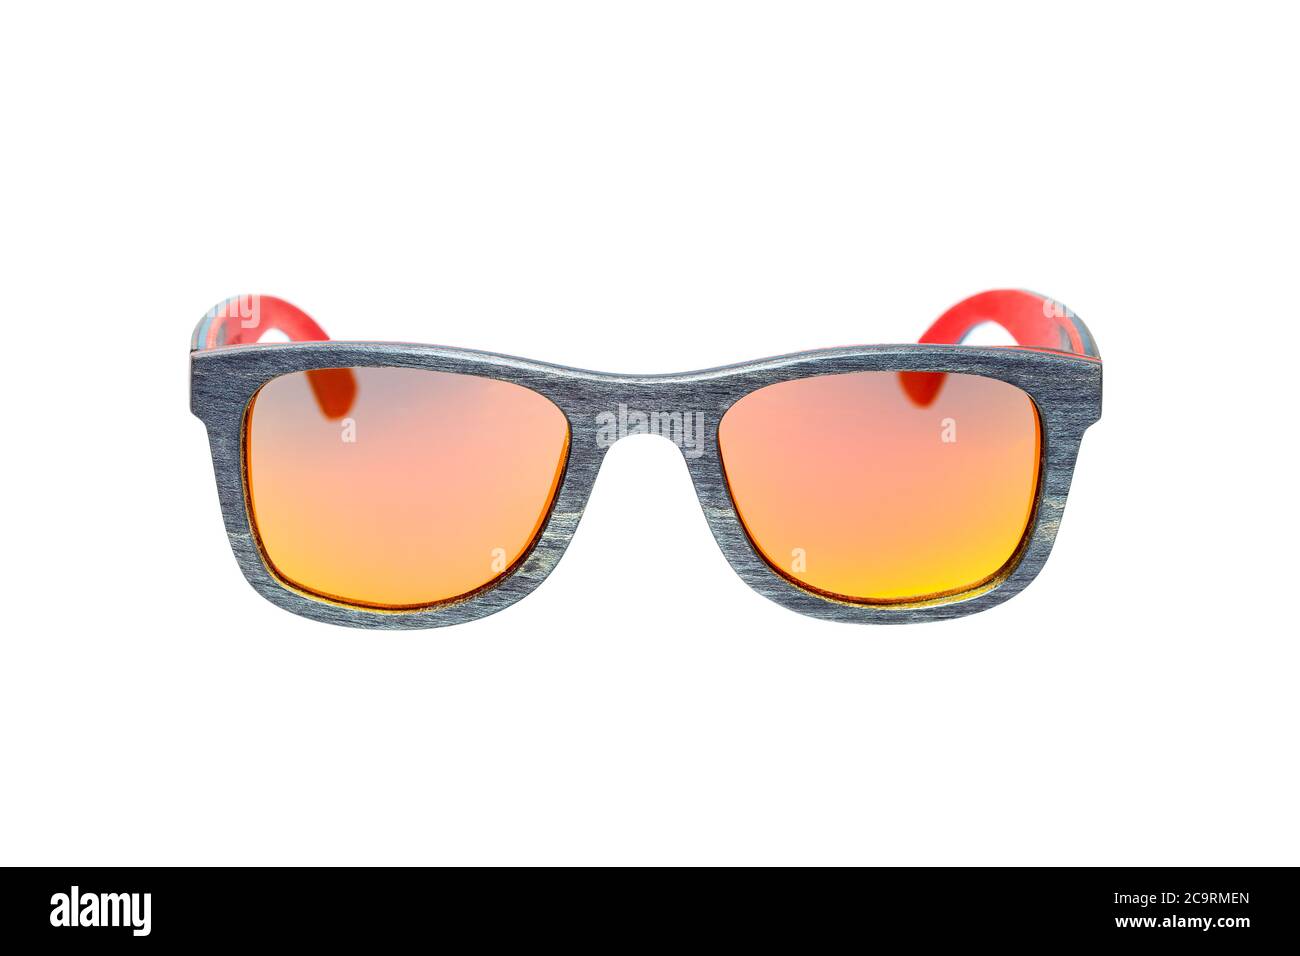 gafas de sol cuadradas estilo 70 de madera con una textura gris y gafas de color amarillo camaleón naranja aisladas sobre una vista frontal de fondo blanco Fotografía de -